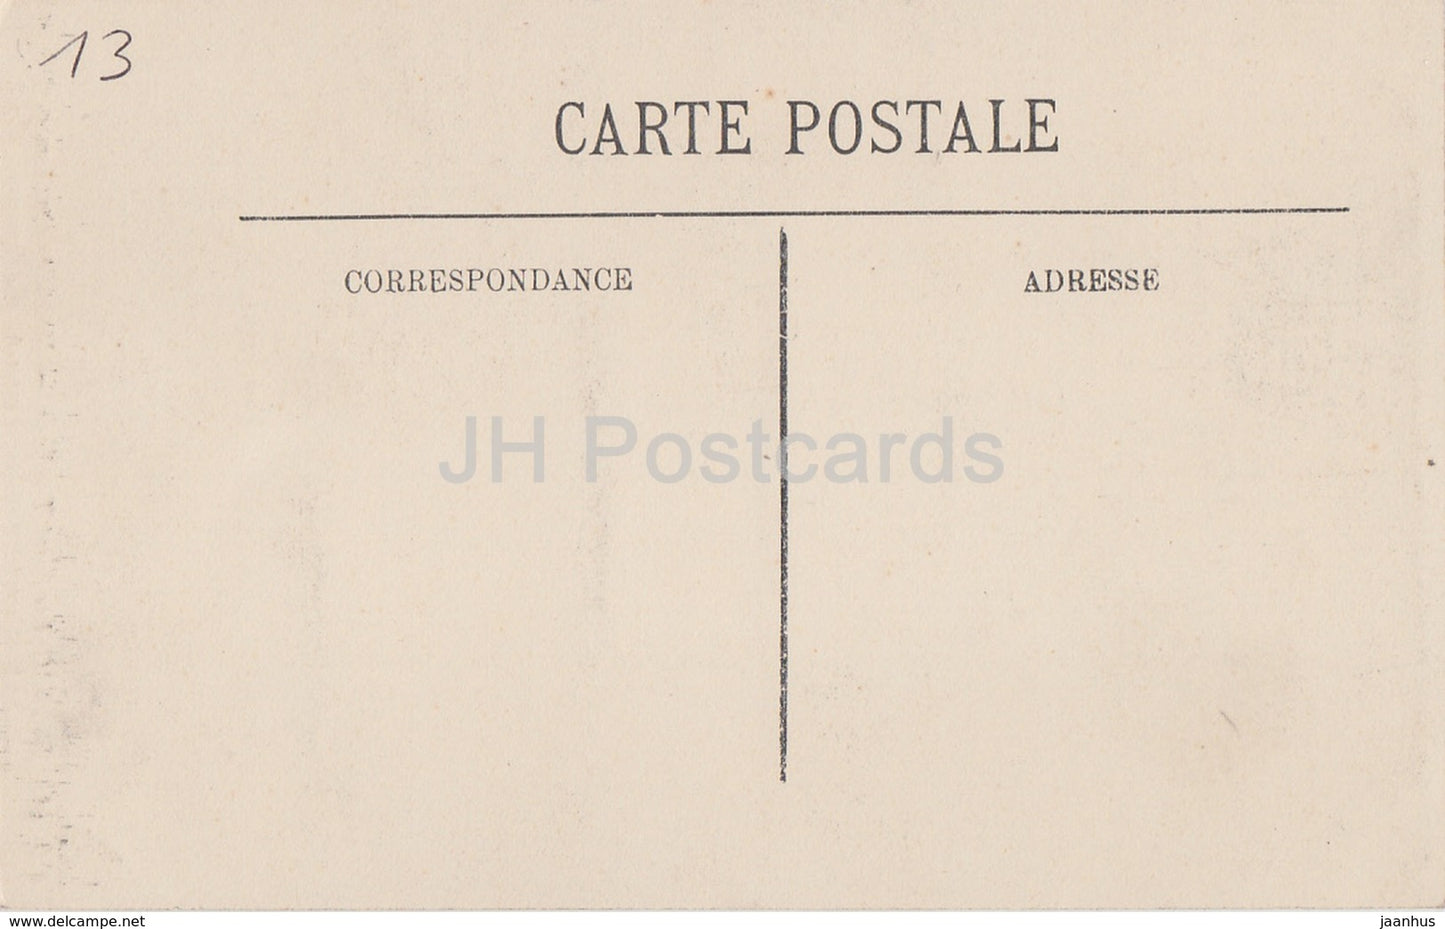 Arles - Cloître Saint Trophime - Médaillon aux Armes de Frédéric Barberousse - 129 - carte postale ancienne - France - inutilisée